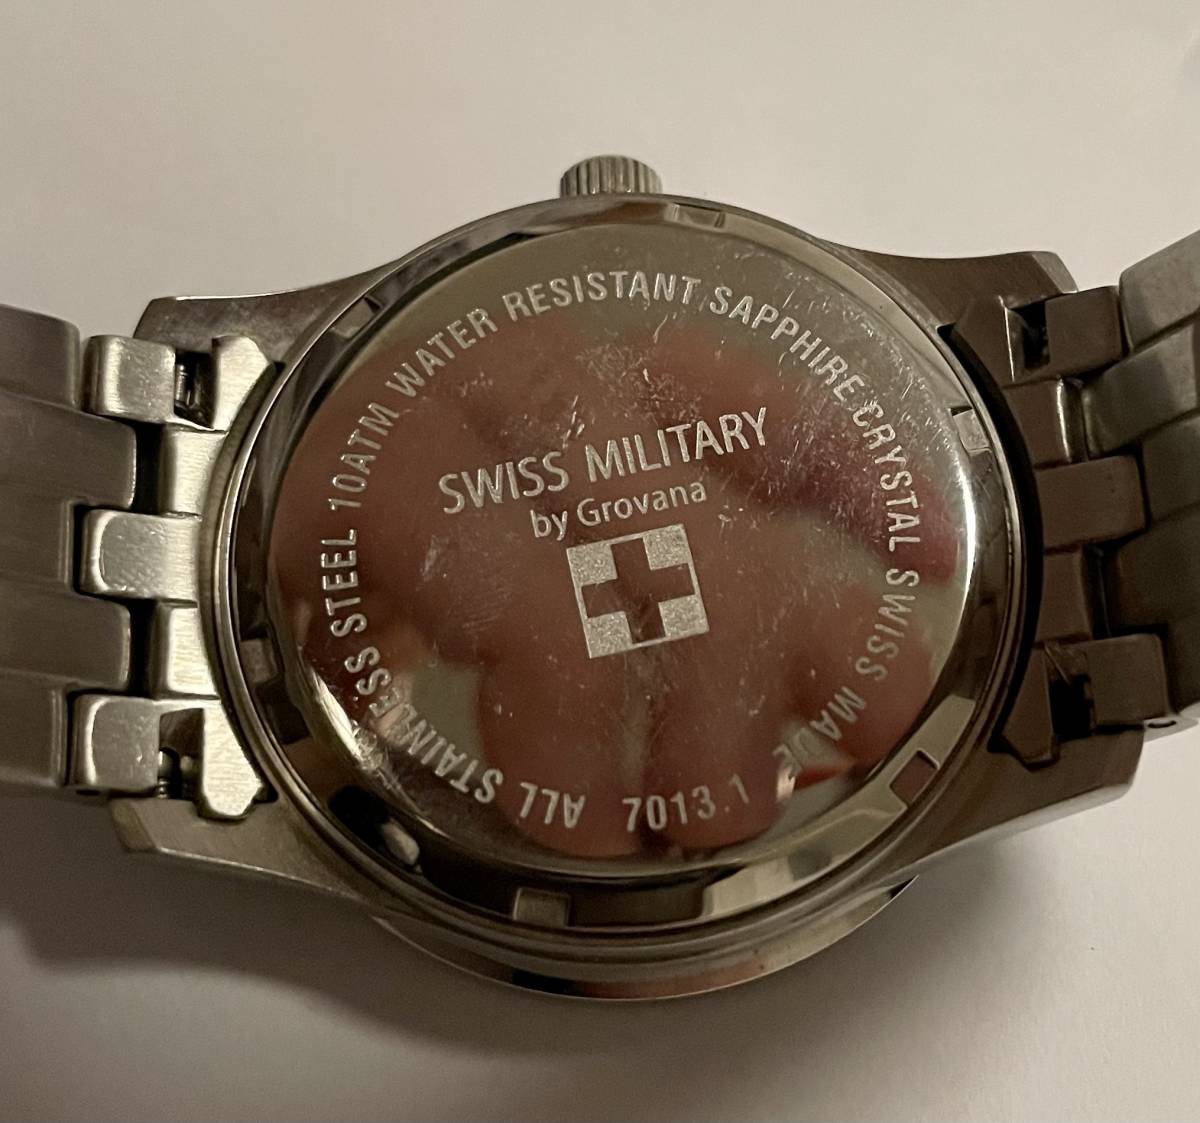 【美品】SWISS MILITARY by Glovana スイスミリタリー グロバナ 7013.1 GMT機能 腕時計 メンズ クォーツ式 電池交換済み 防水 スイス製_画像3